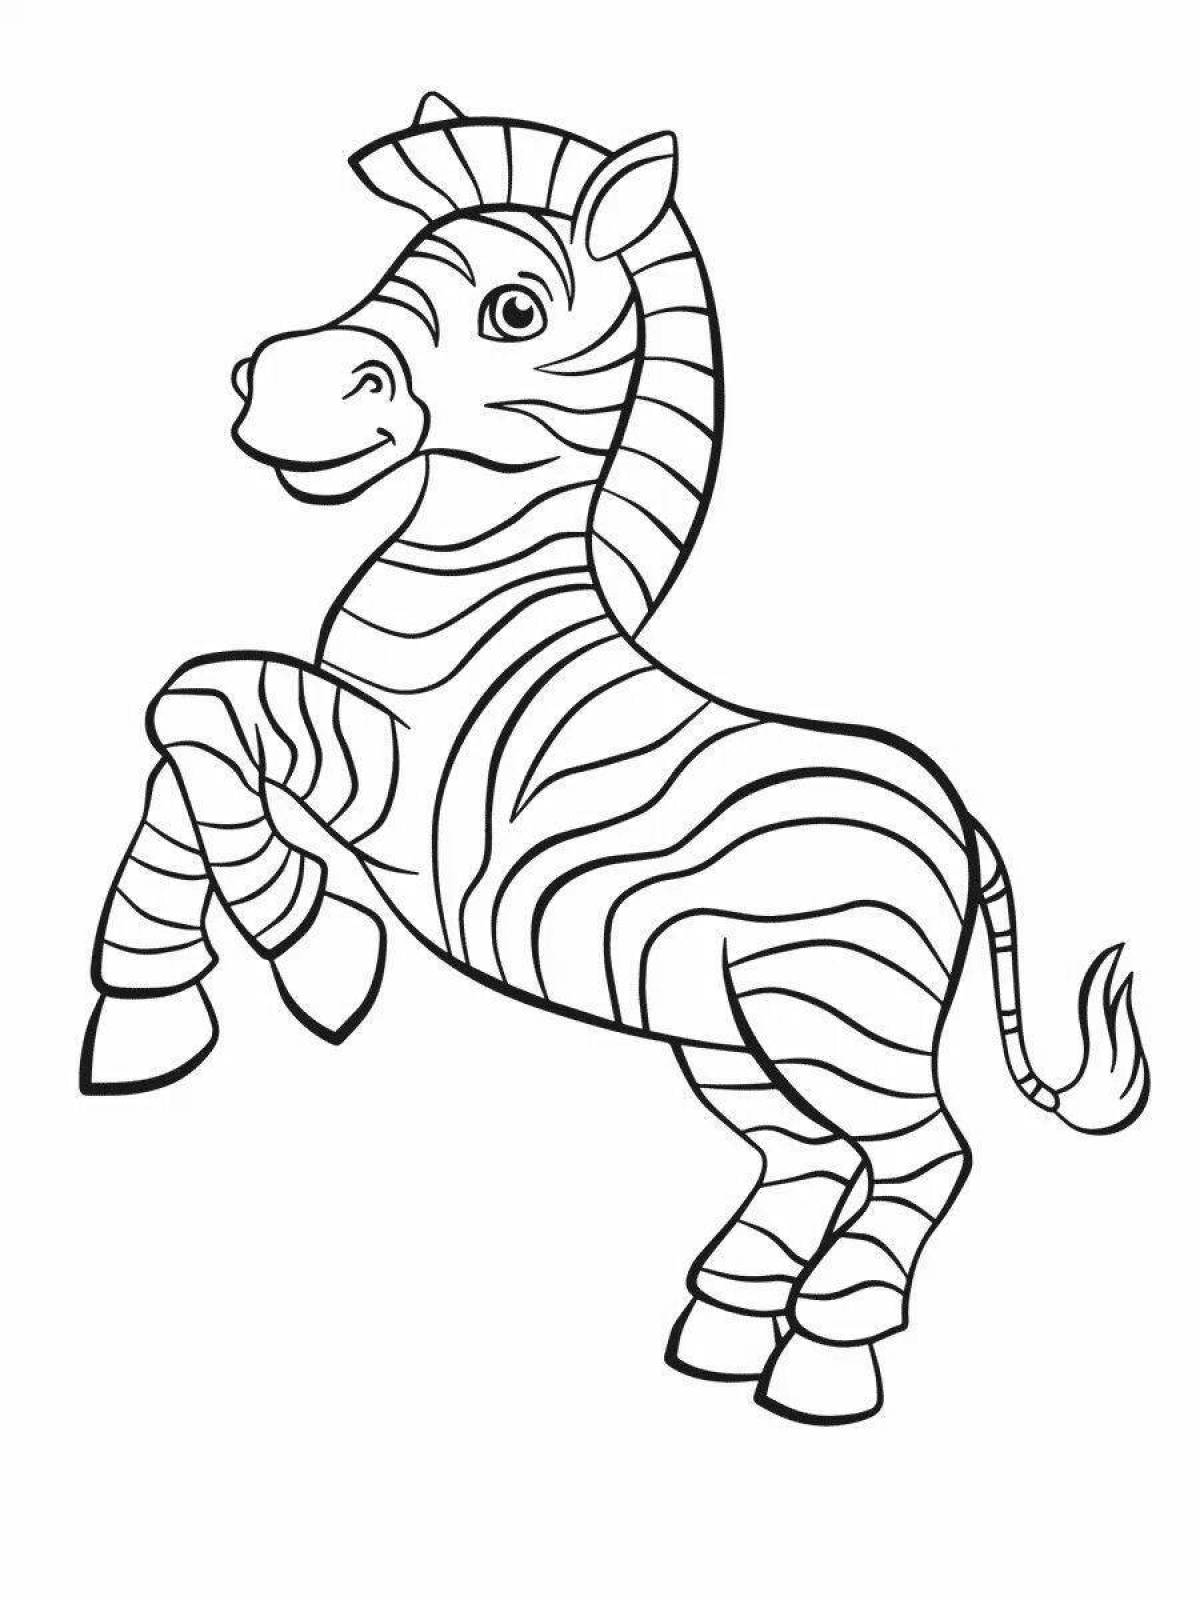 Милая зебра-раскраска для дошкольников 3-4 лет